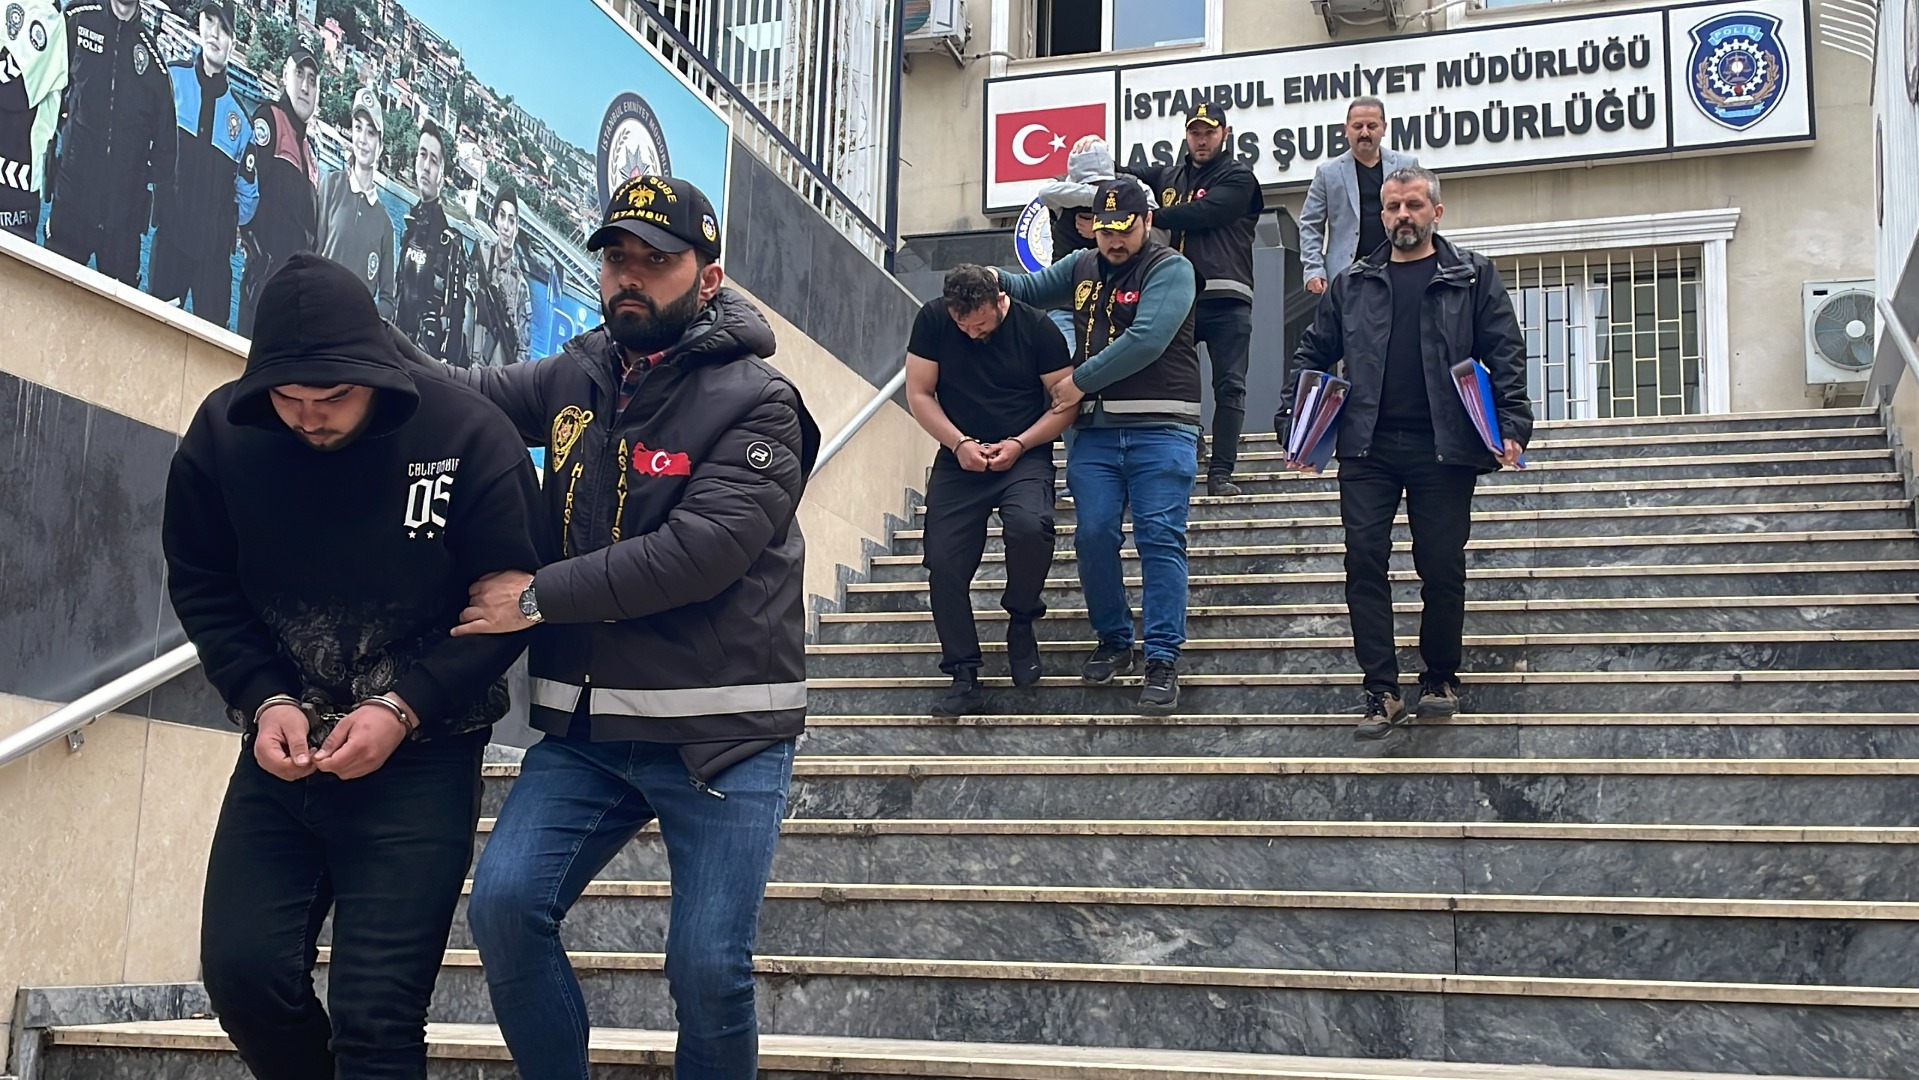 İstanbul'da motosiklet hırsızlığı: 3 gözaltı!